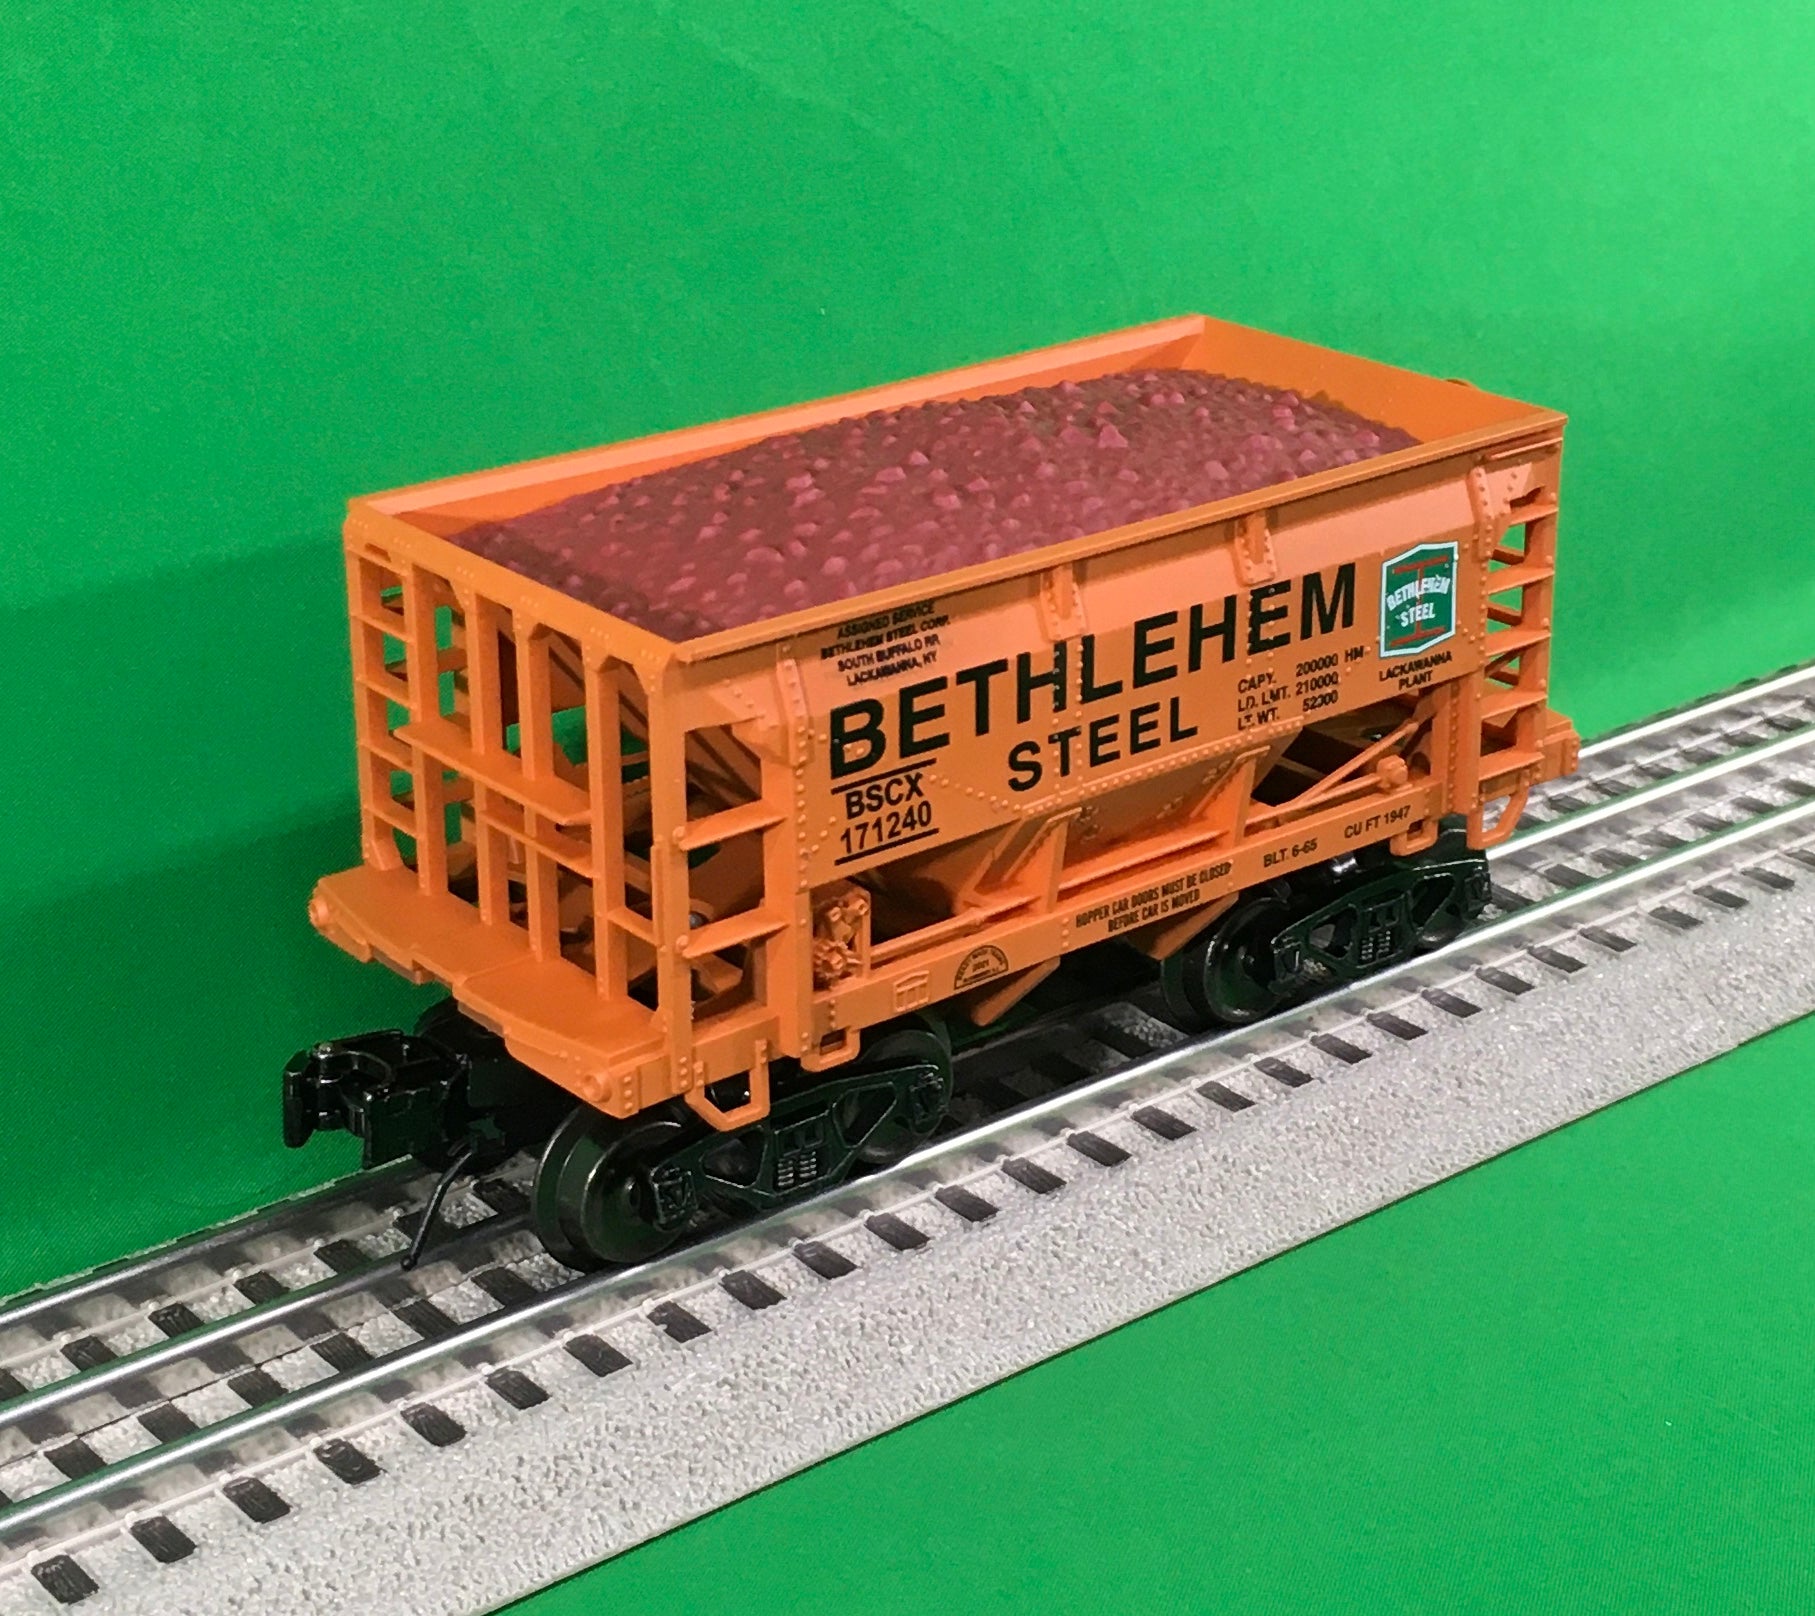 Ready Made Trains RMT-96719-521 - Ore Car "Bethlehem Steel" (Lackawanna, NY Plant)